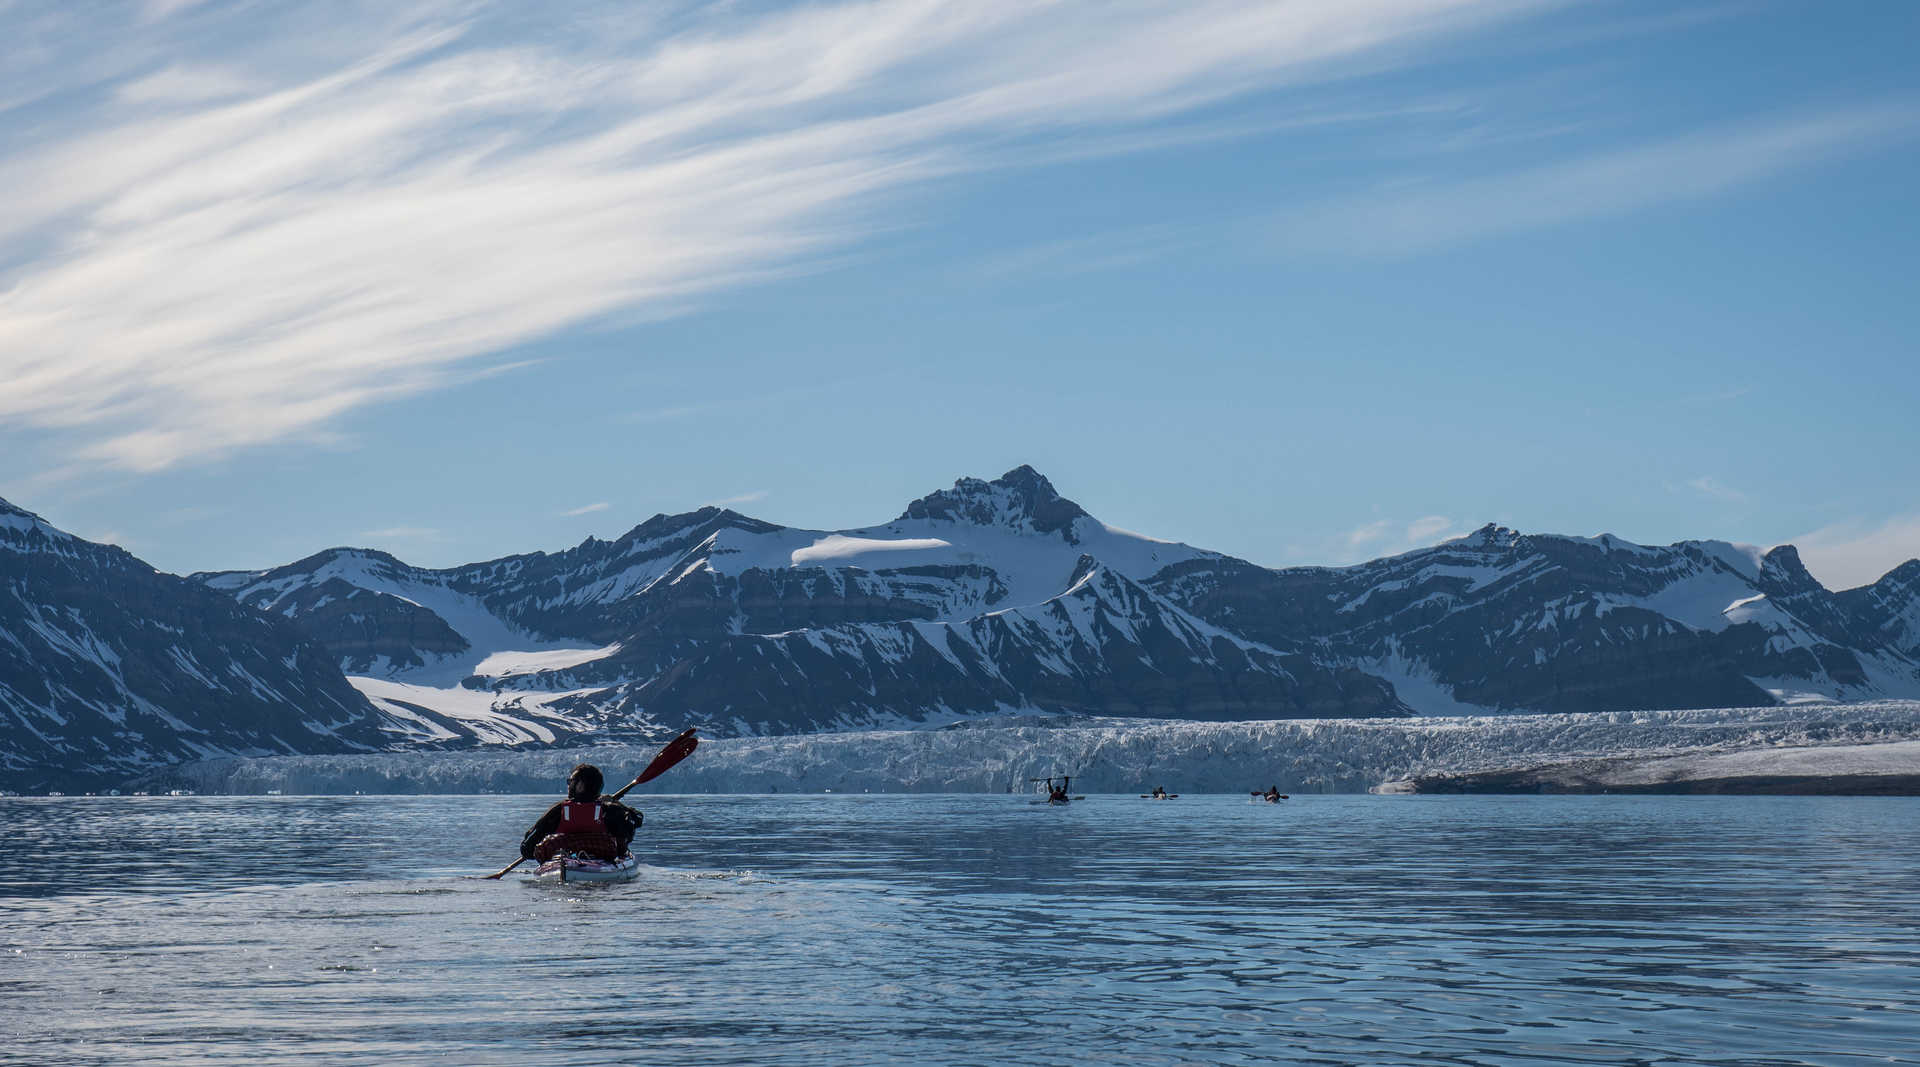 Voyage en kayak - Norvège : Randonnée et kayak au pays des glaciers bleus